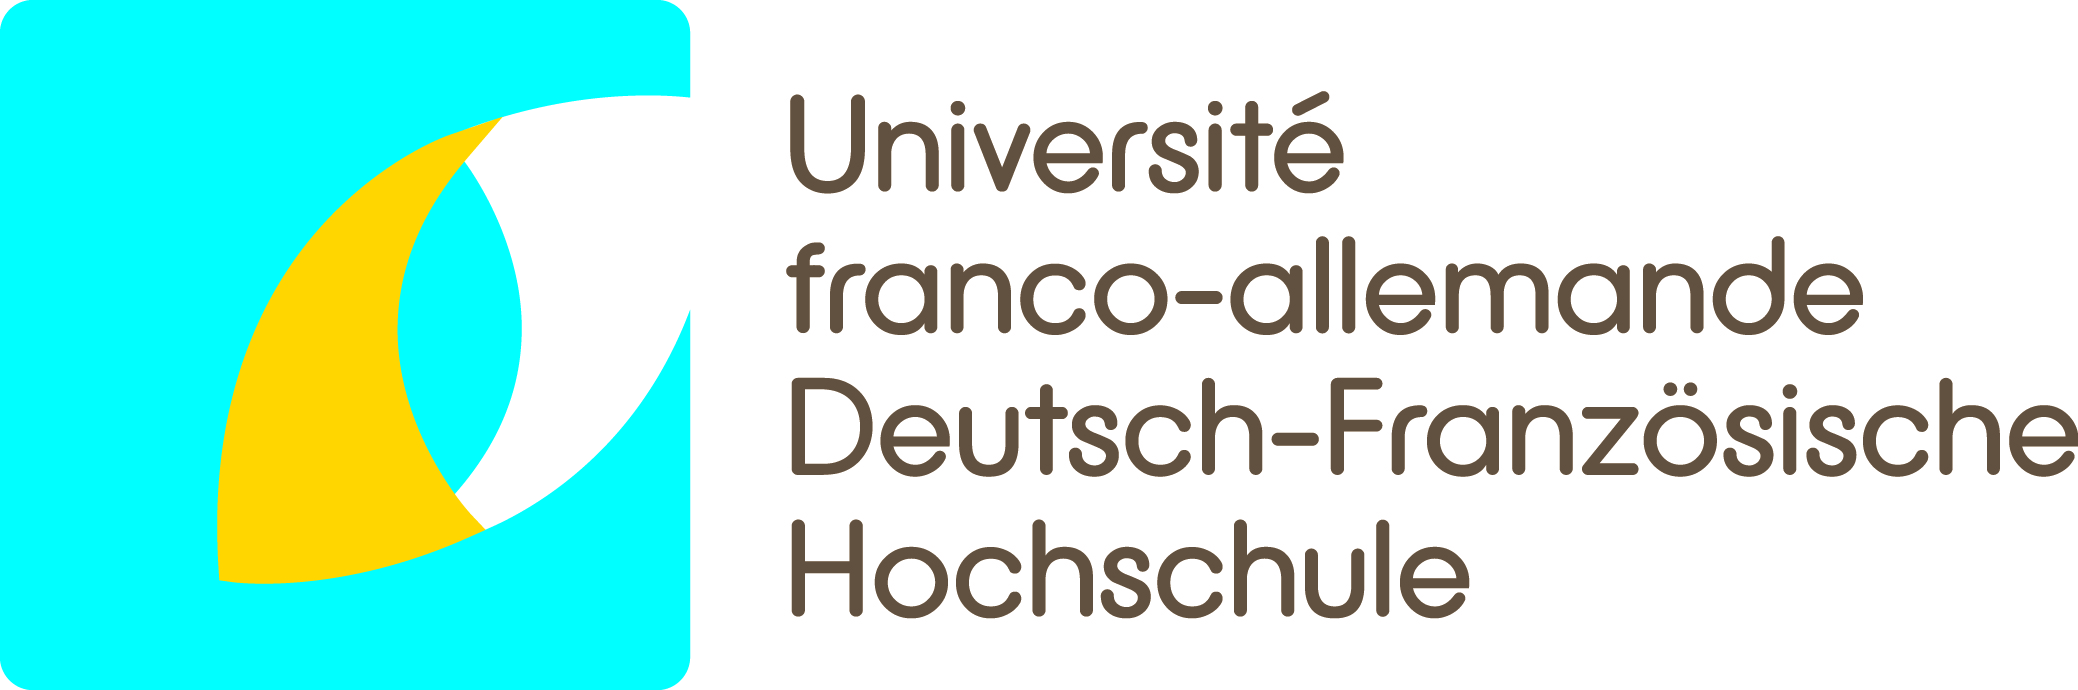 Université franco-allemande / Deutsch-Französische Hochschule